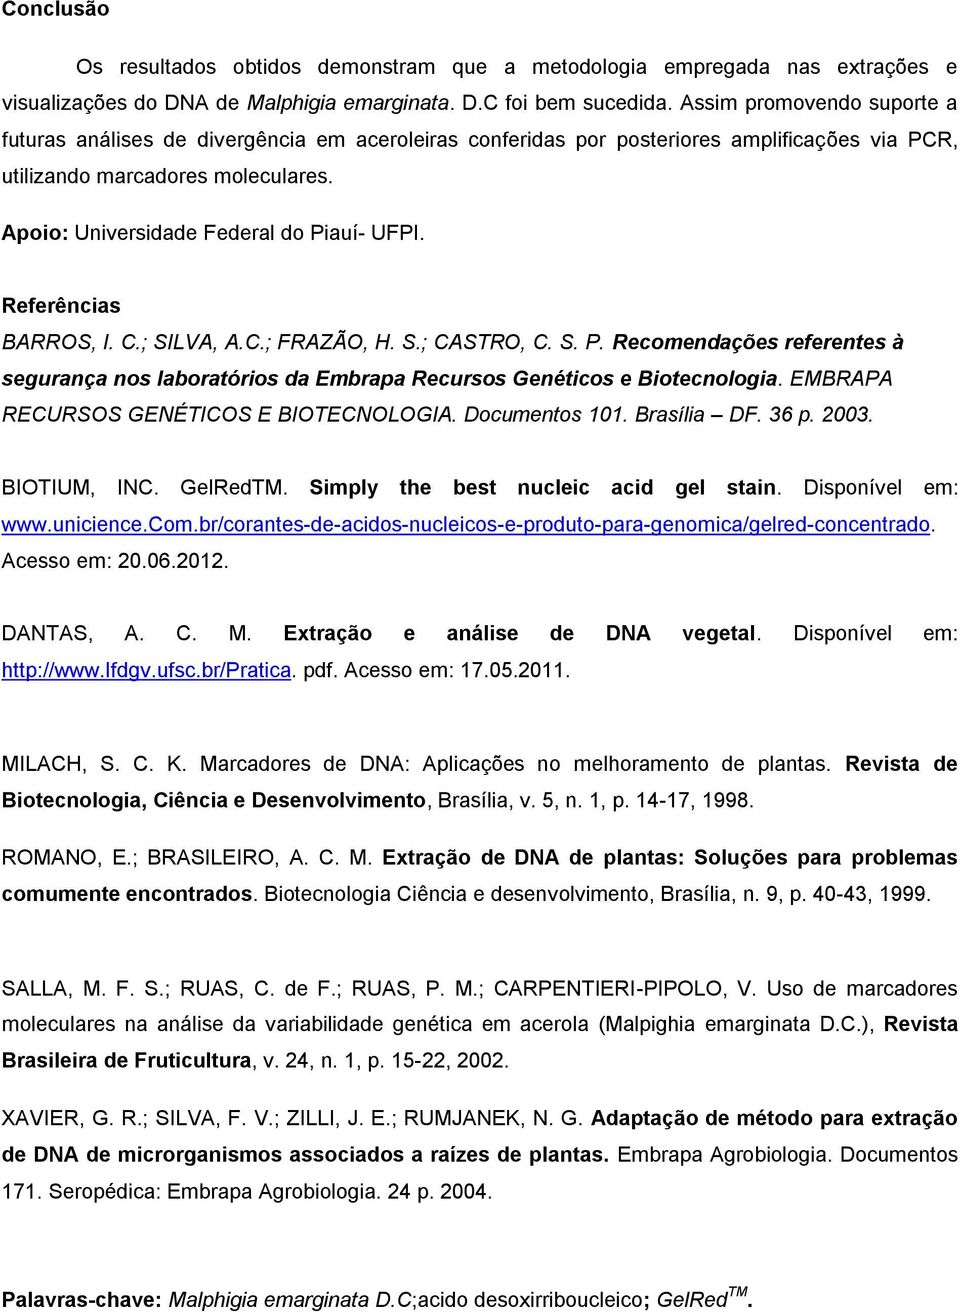 Apoio: Universidade Federal do Piauí- UFPI. Referências BARROS, I. C.; SILVA, A.C.; FRAZÃO, H. S.; CASTRO, C. S. P. Recomendações referentes à segurança nos laboratórios da Embrapa Recursos Genéticos e Biotecnologia.